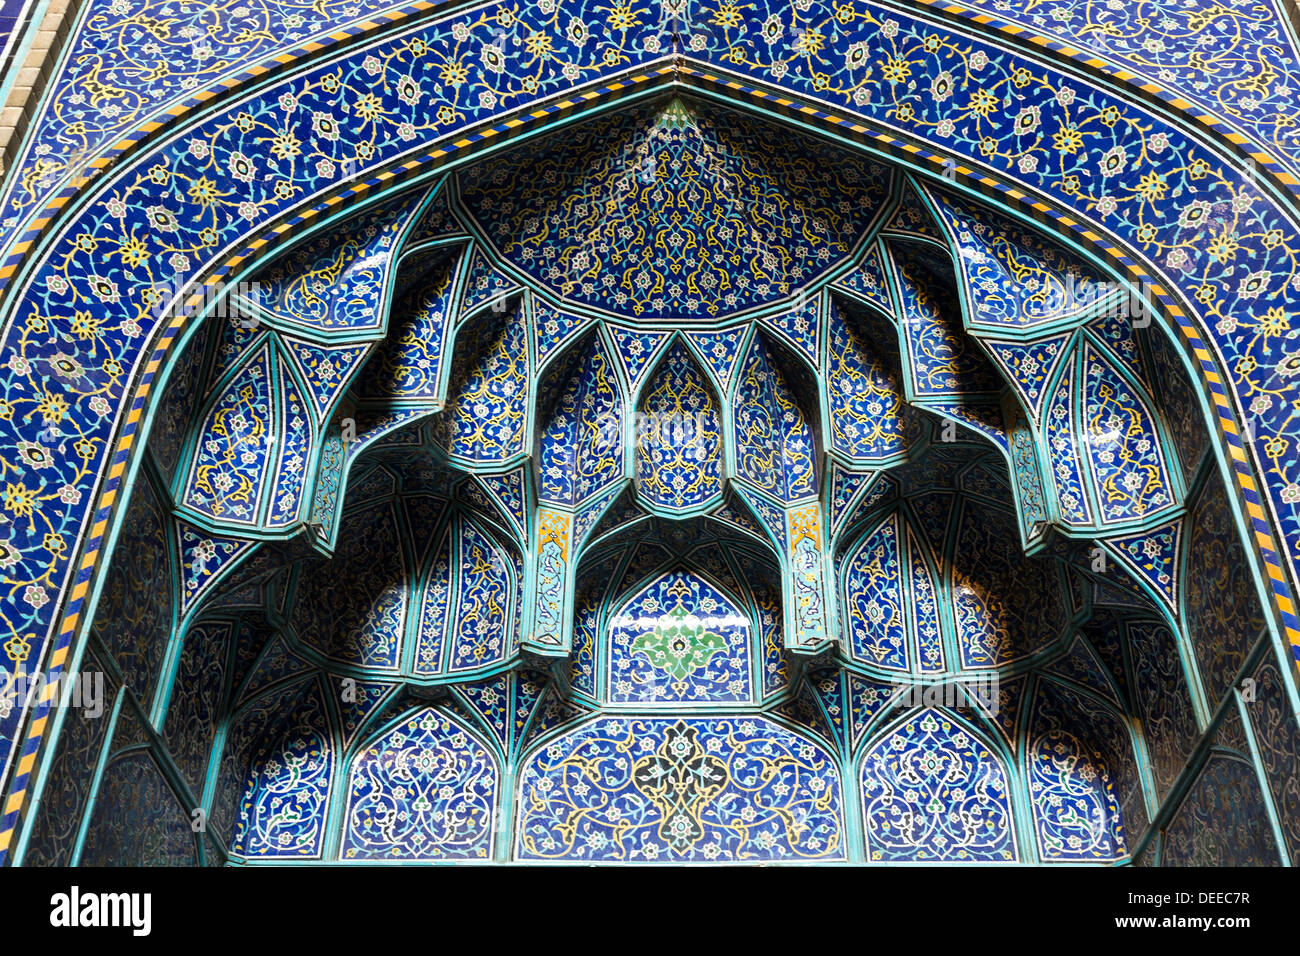 Dettaglio del mihrab piastrellato, Shaikh Lutfallah moschea, Isfahan, Iran Foto Stock